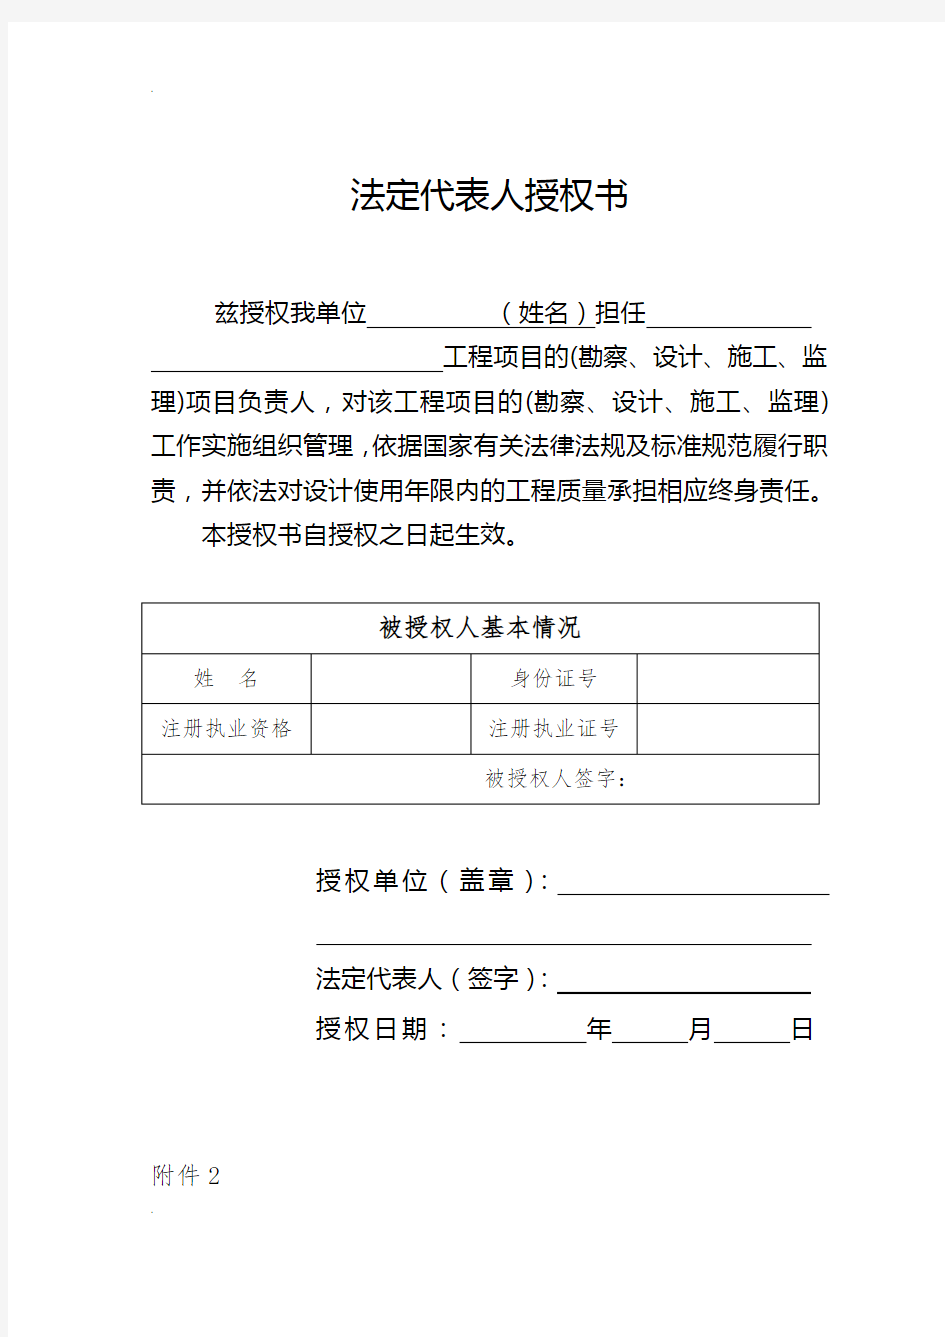 上海市工程质量终身责任承诺书(建设部统一式样)